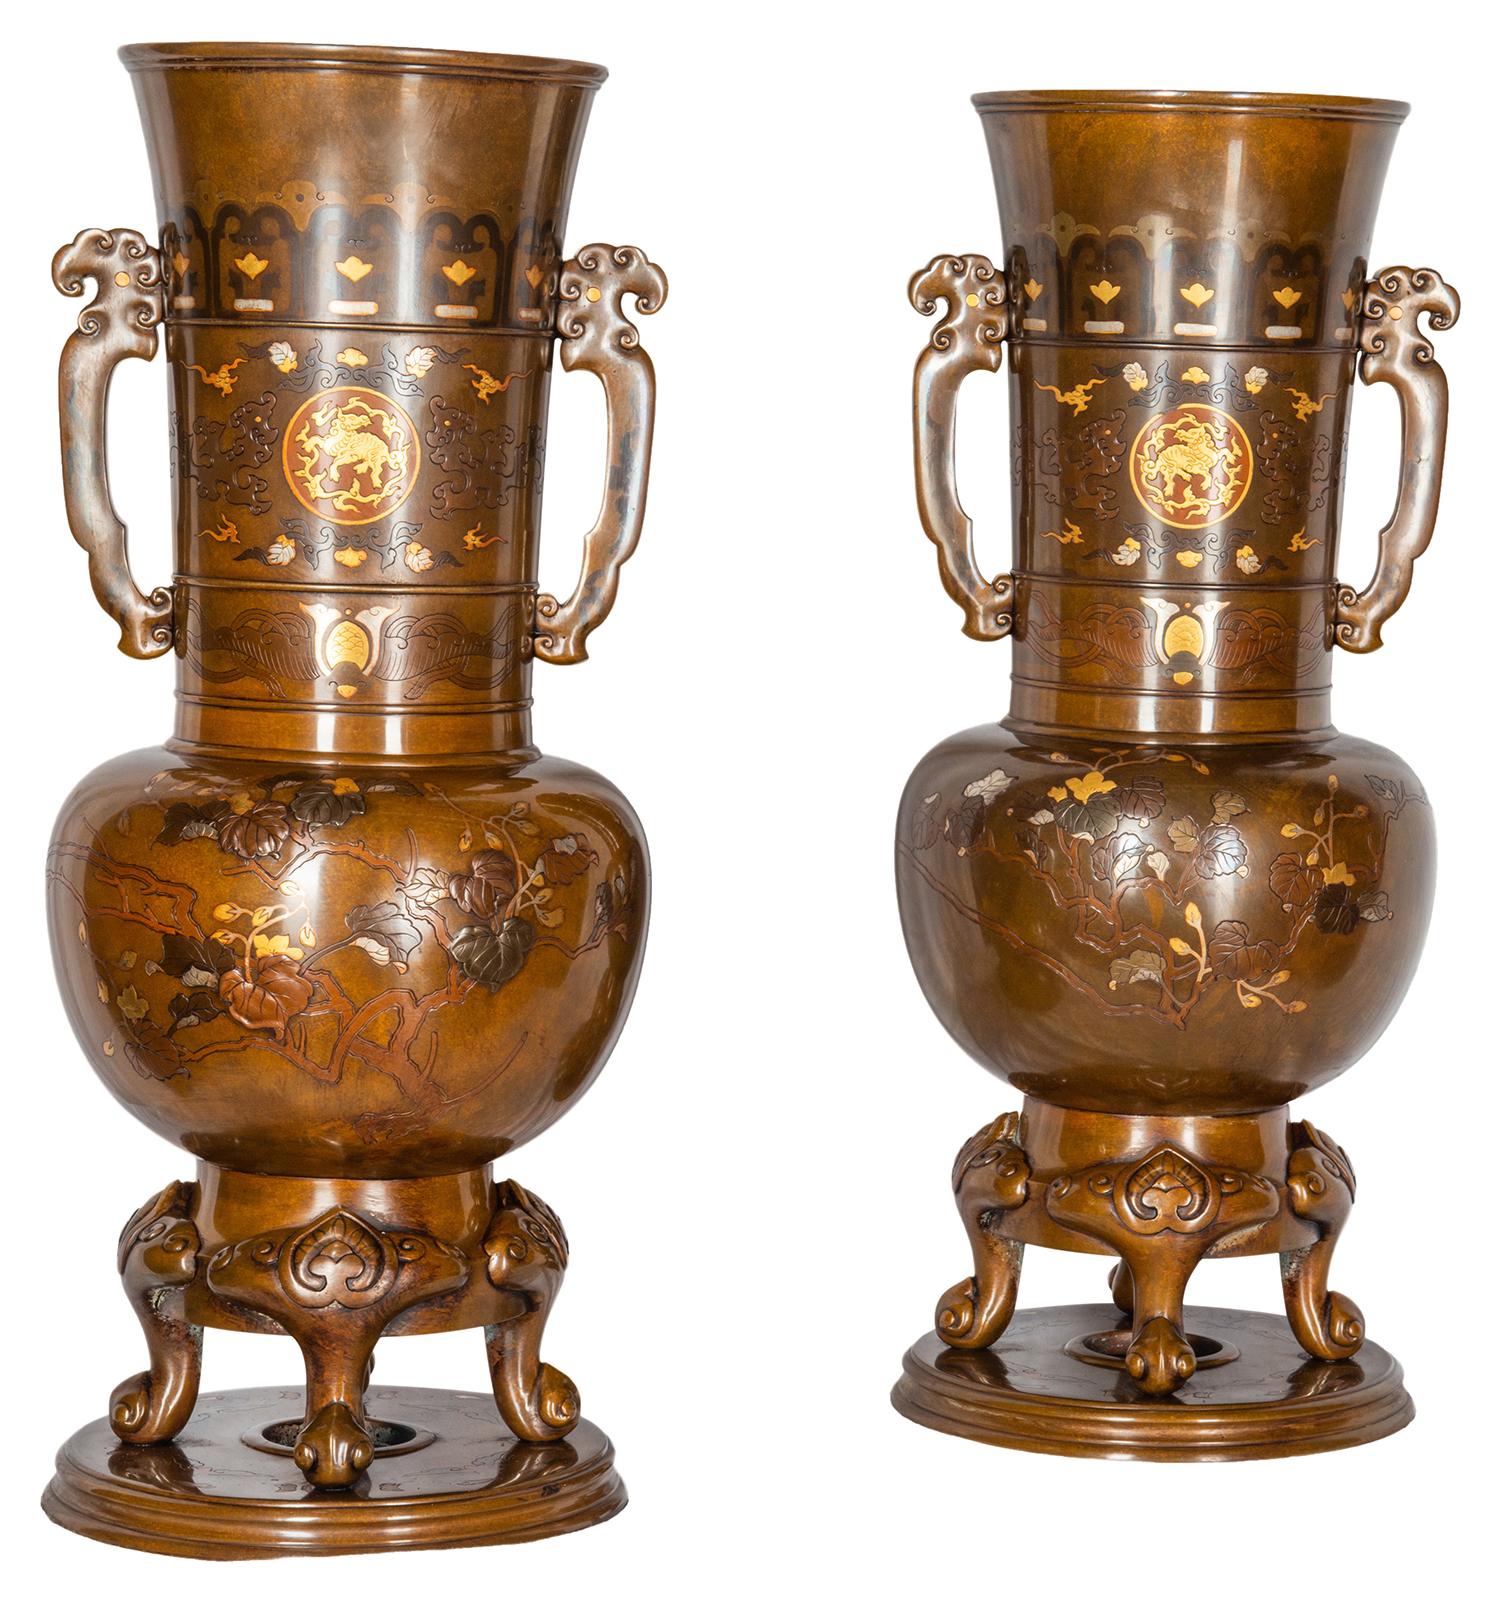 Zwei hochwertige japanische Vasen aus der Meiji-Periode (1868-1912) aus patinierter Bronze im Miyao-Stil mit Gold- und Silberauflagen. Jede Vase hat zwei Henkel, ein klassisches Motiv mit eingravierten Fabelwesen und wunderschönen Bäumen, Blättern